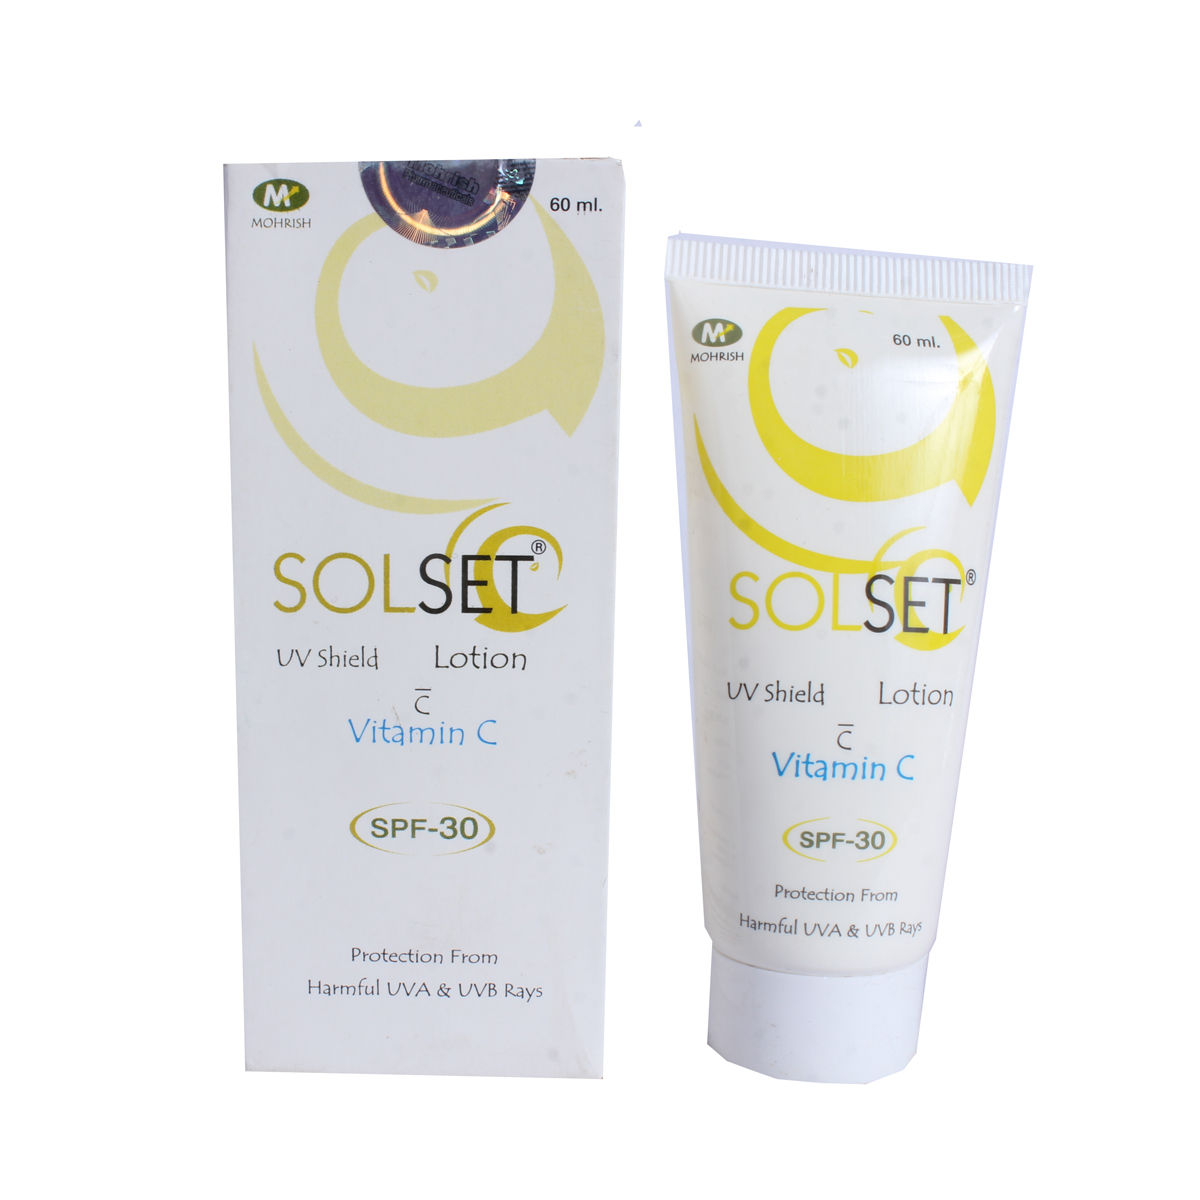 Solset Spf 30 Sunscreen Lotion 60 ml, Pack of 1 